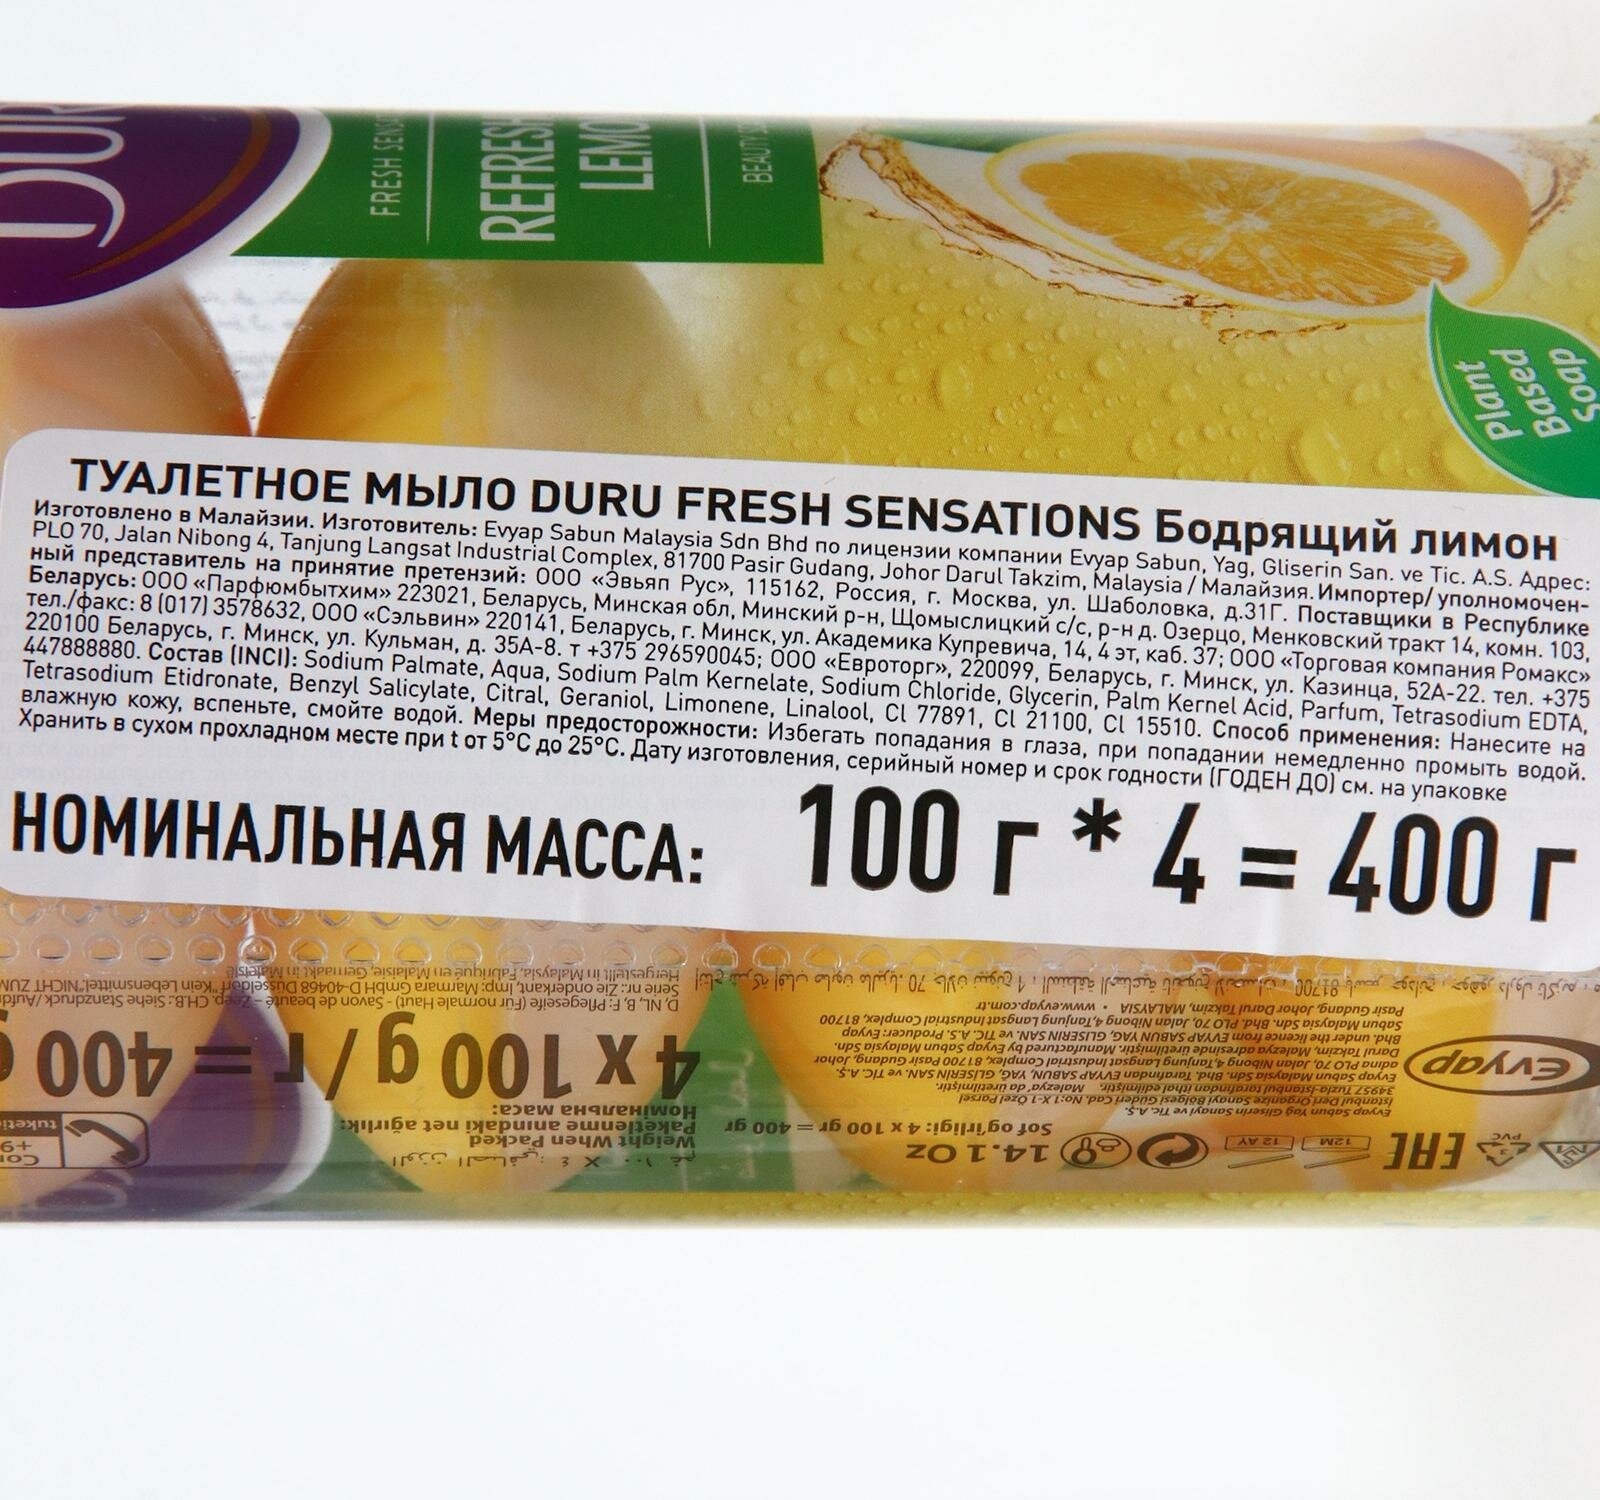 DURU Крем-мыло кусковое 1+1 Лимон лимон, 4 шт., 100 г